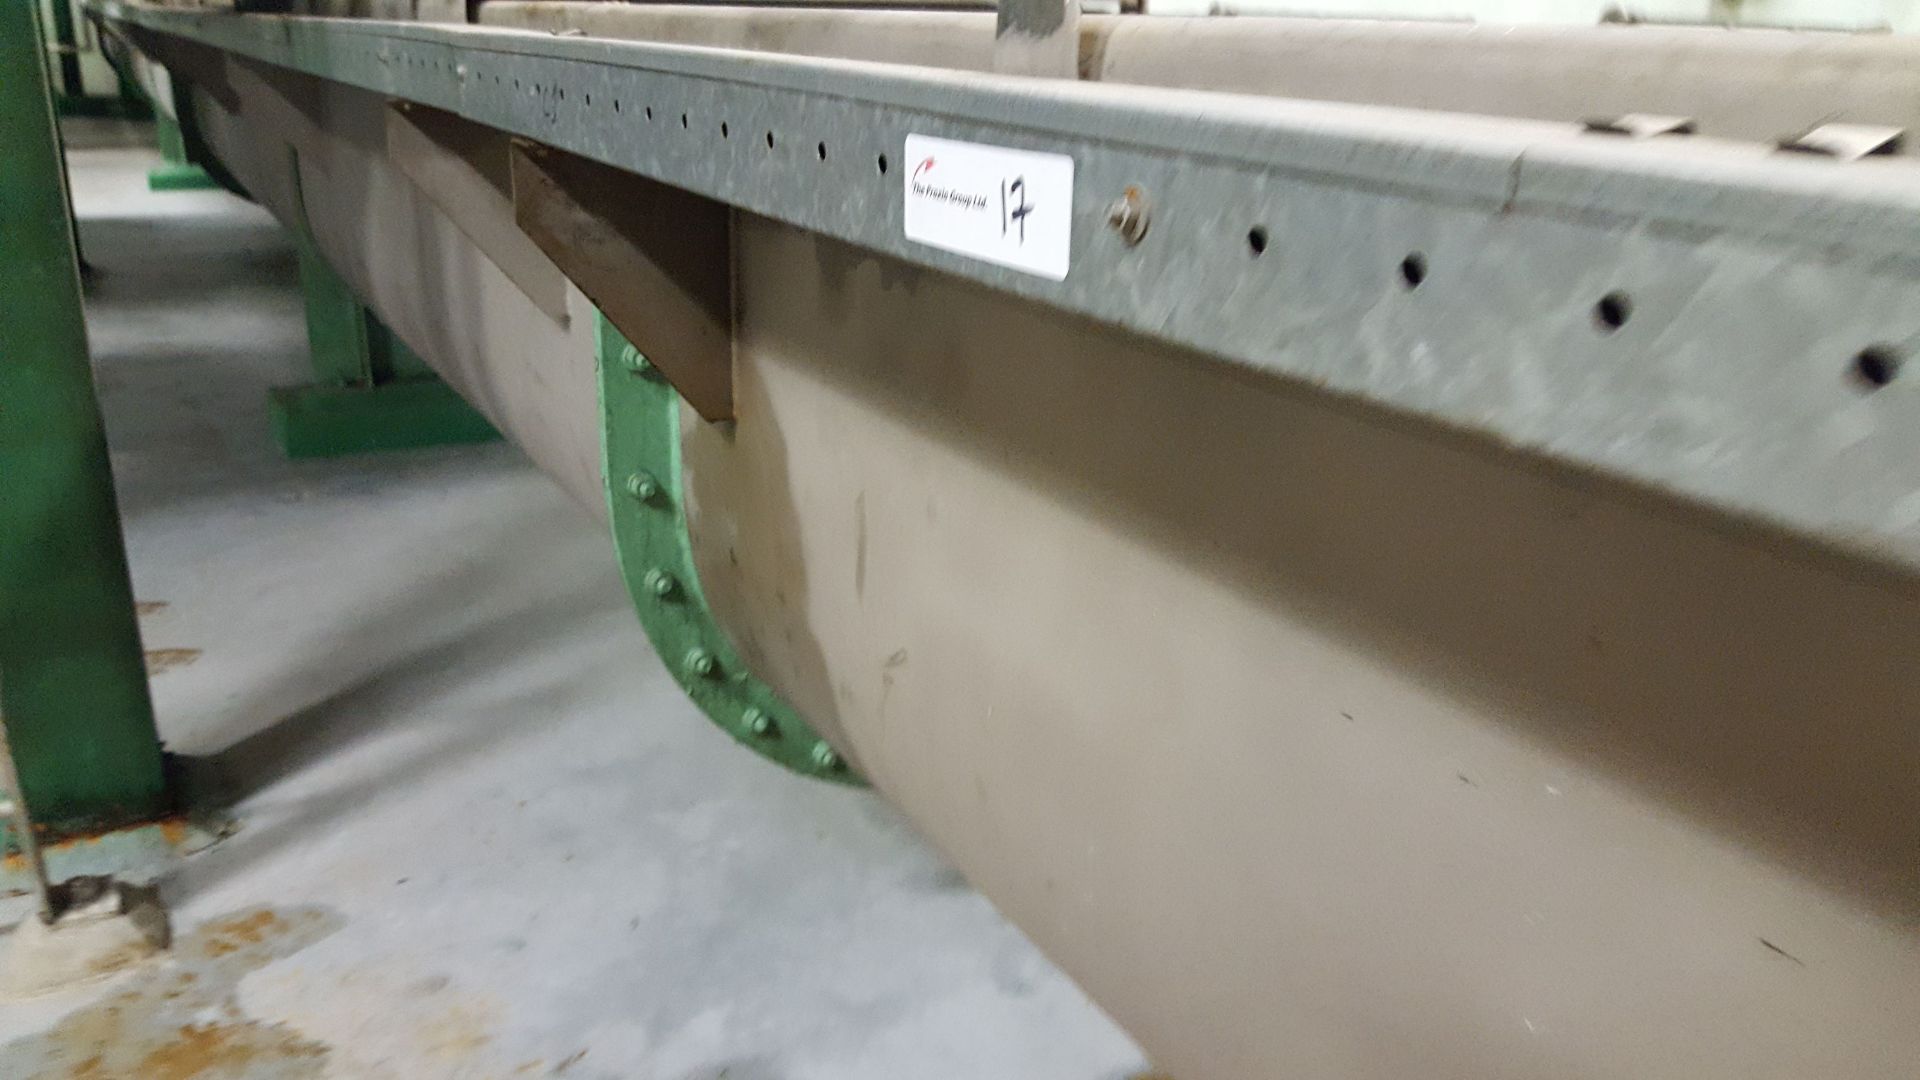 Asdor Ltd. Stainless Steel Screw Conveyor y 65 ft long x 24", 20 HP - Image 9 of 18